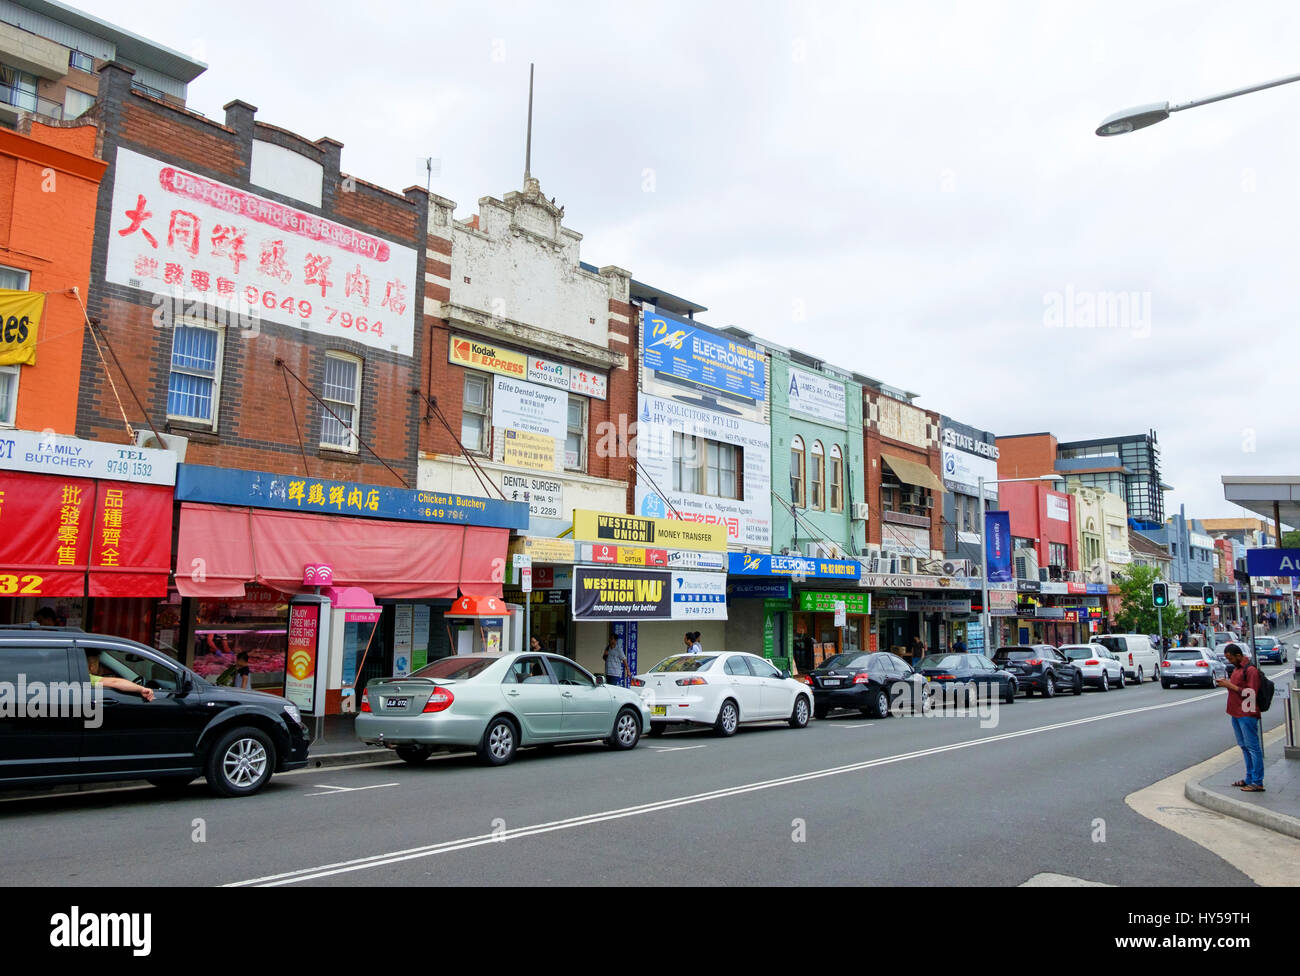 Hauptstraße von Auburn, einem multikulturellen Vorort von Western Sydney, Australien. Australischen Multikulturalismus; Geschäfte; Ladenschilder; kulturelle Vielfalt Stockfoto